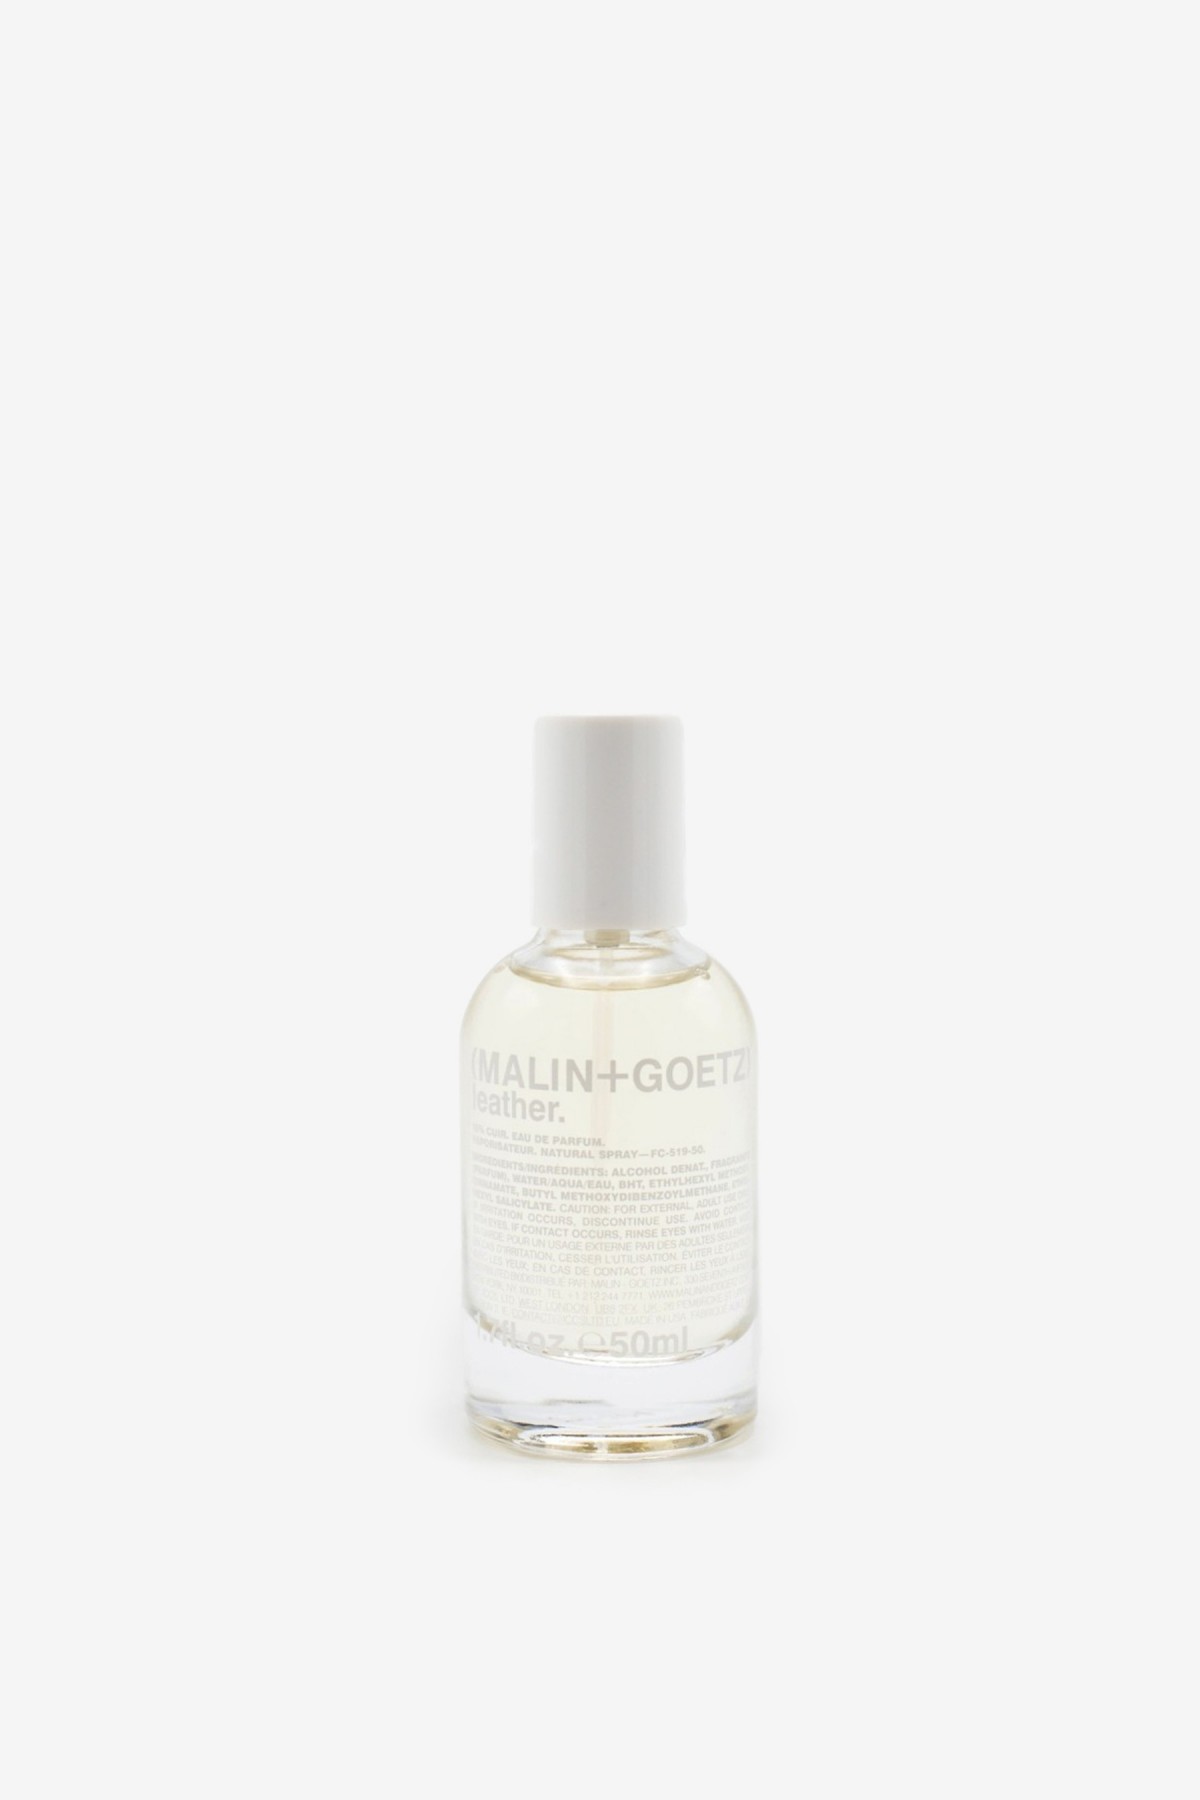 Malin+Goetz Leather Eau de Parfum 50ml in 